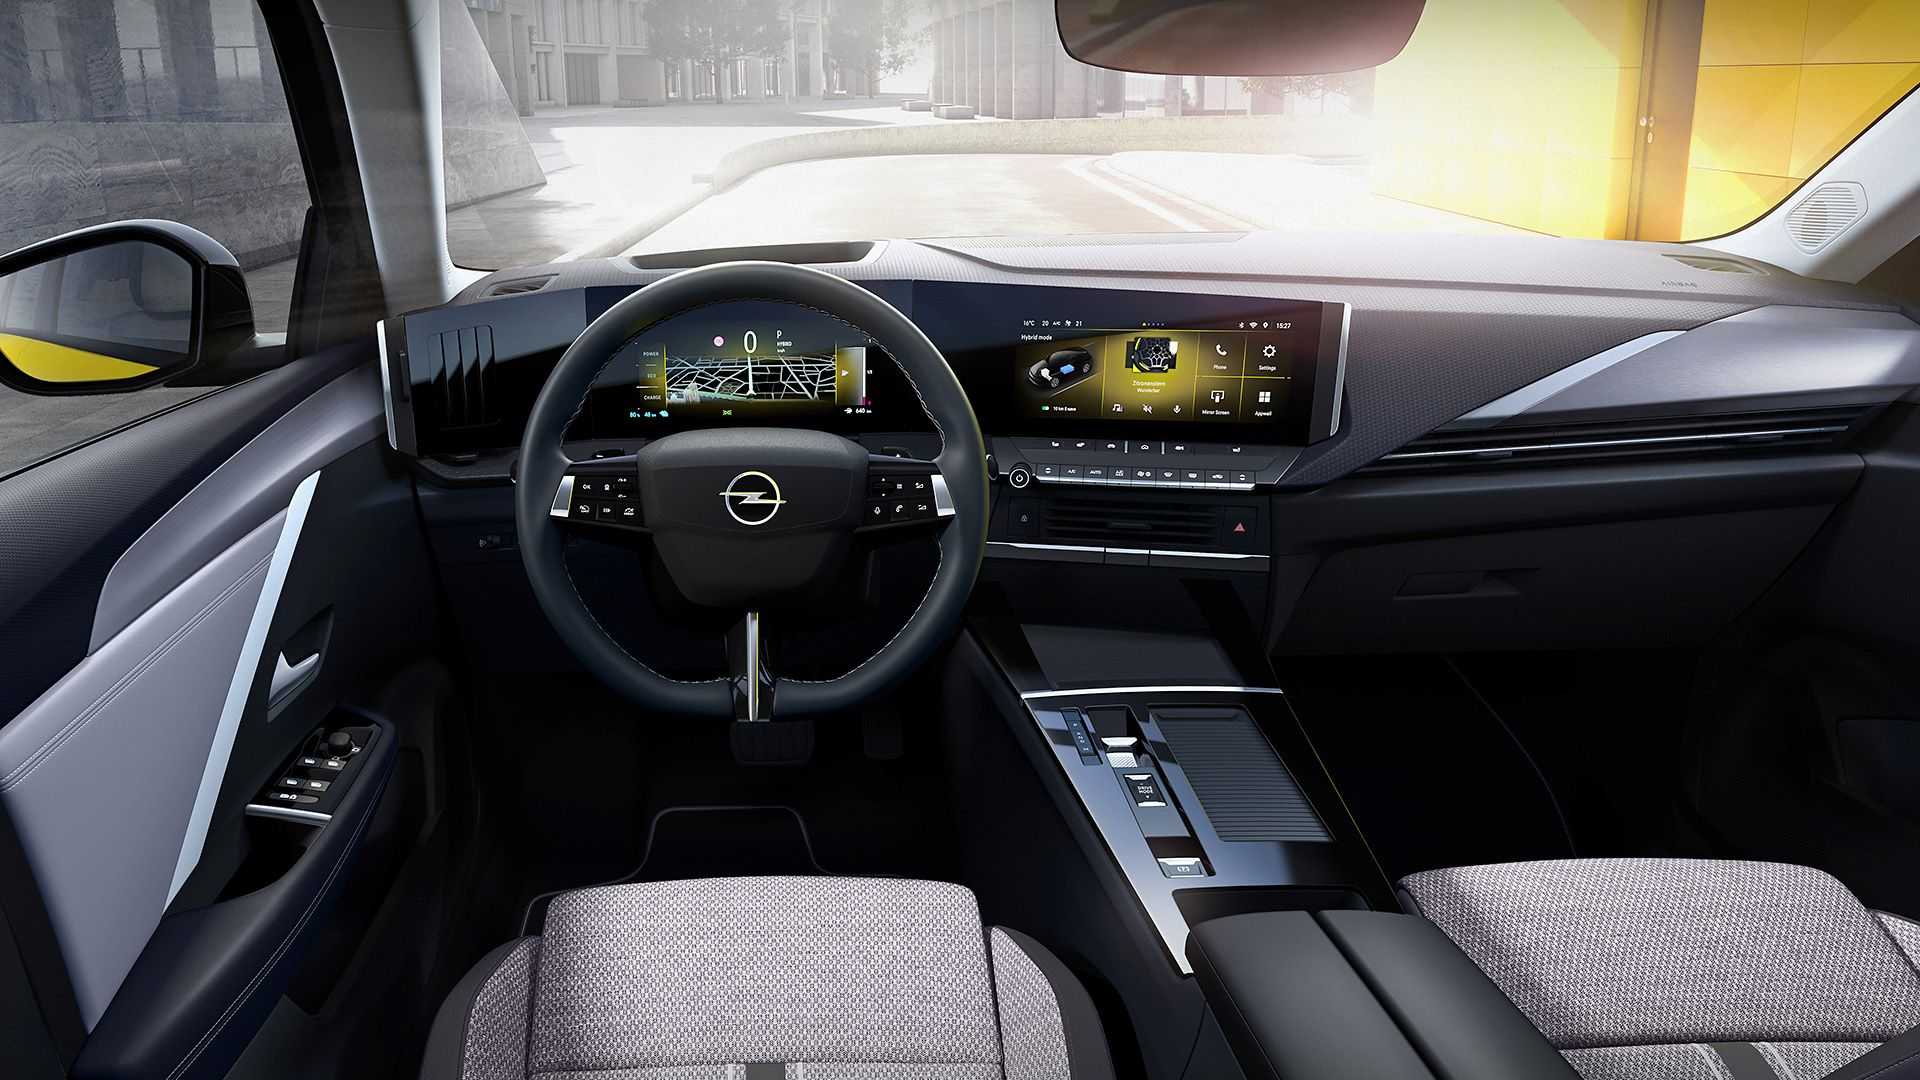 Официально дебютировал Opel Astra шестой генерации